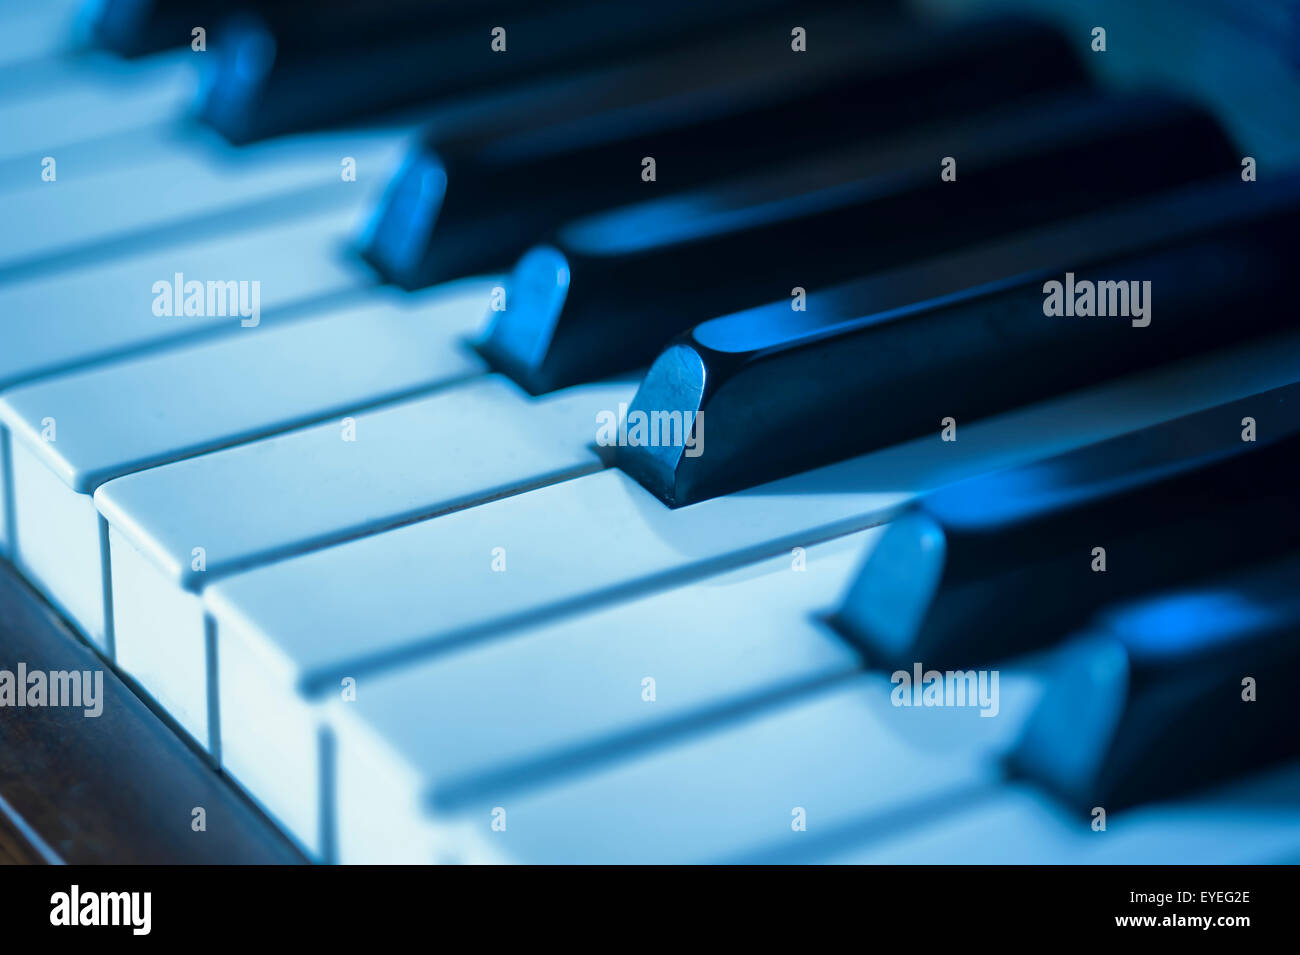 Piano key blues Stock Photo